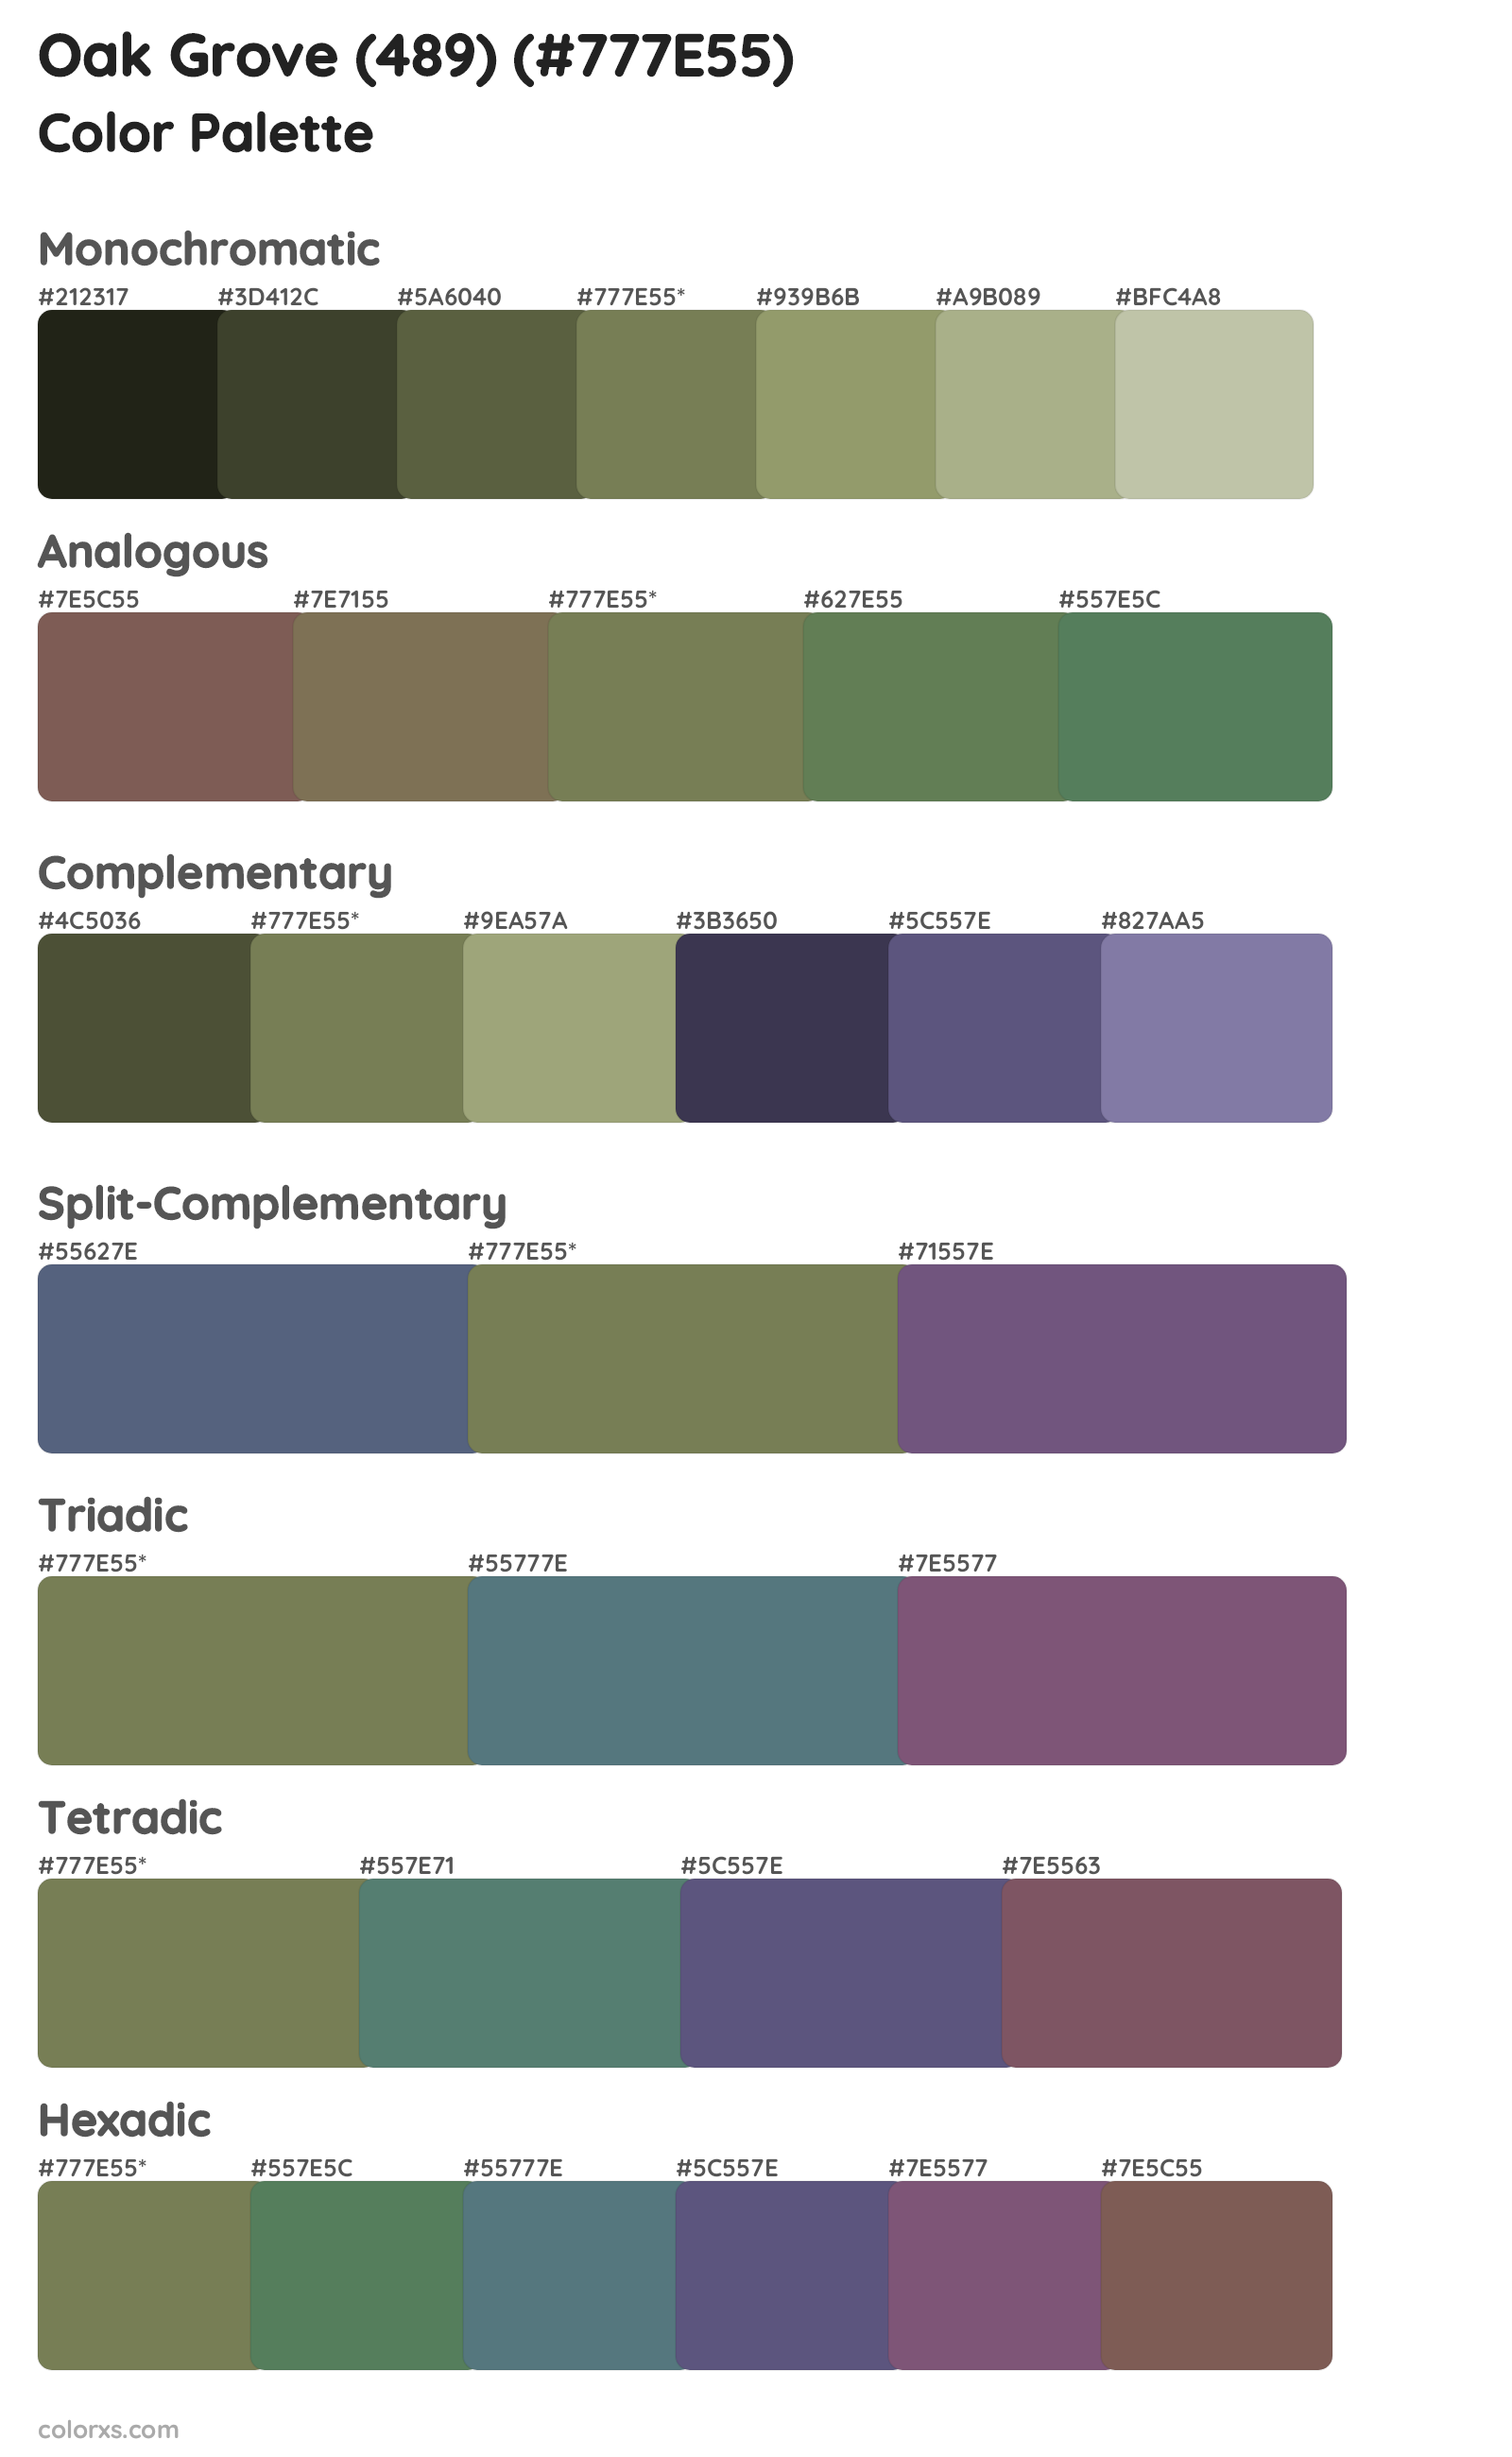 Oak Grove (489) Color Scheme Palettes